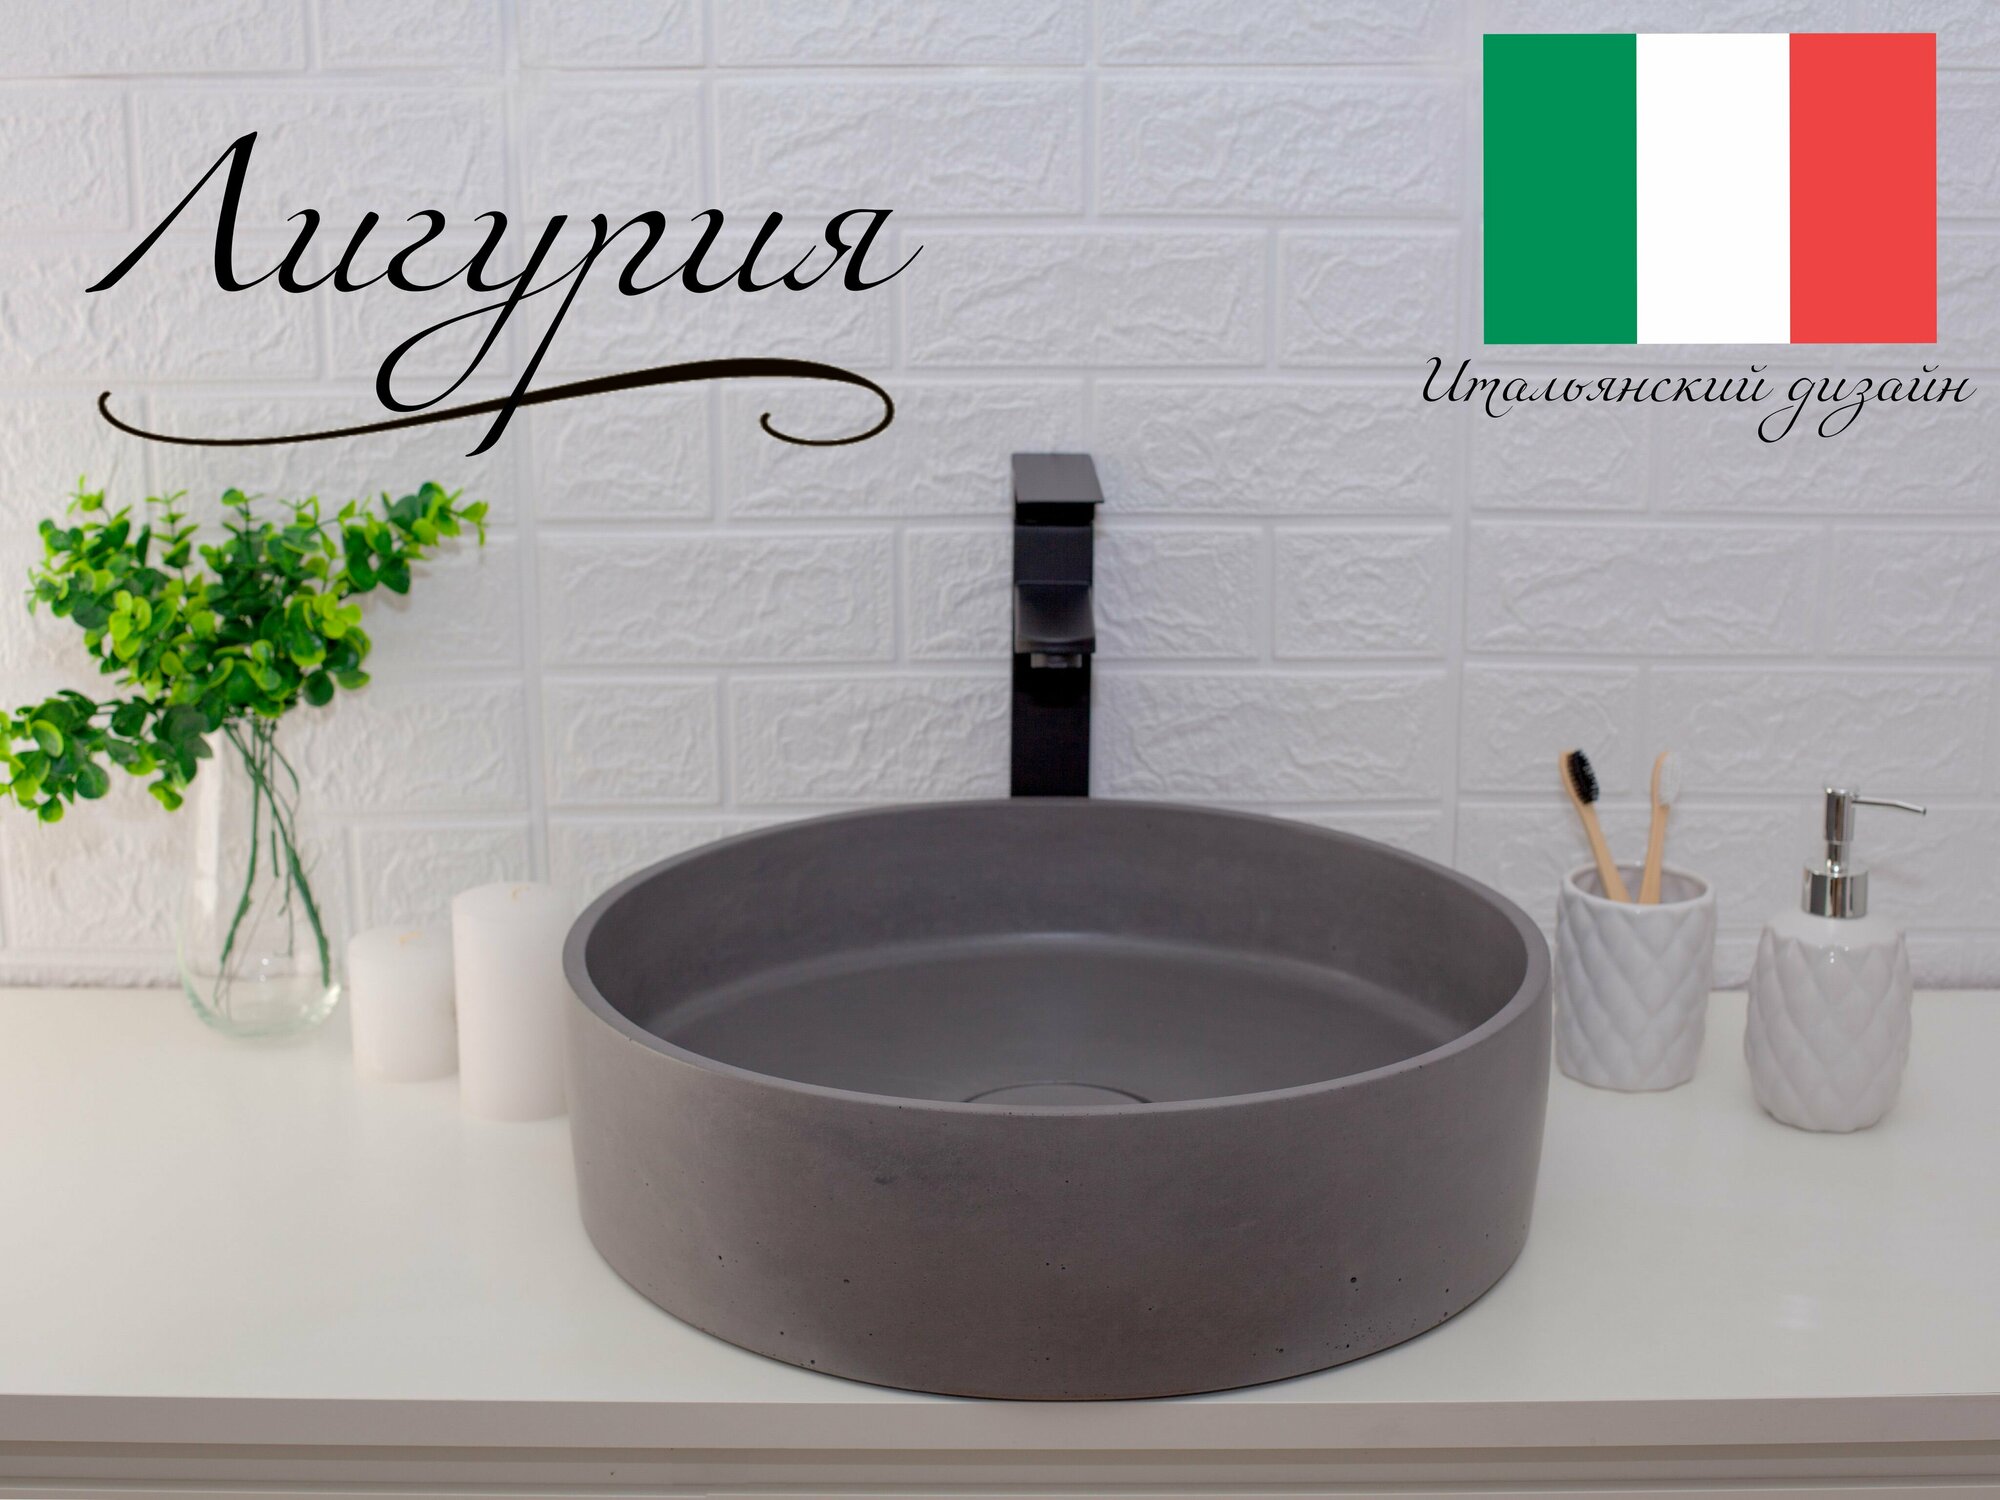 Раковина Лигурия накладная из бетона, серый , для ванной, на тумбу стол столешницу, умывальник